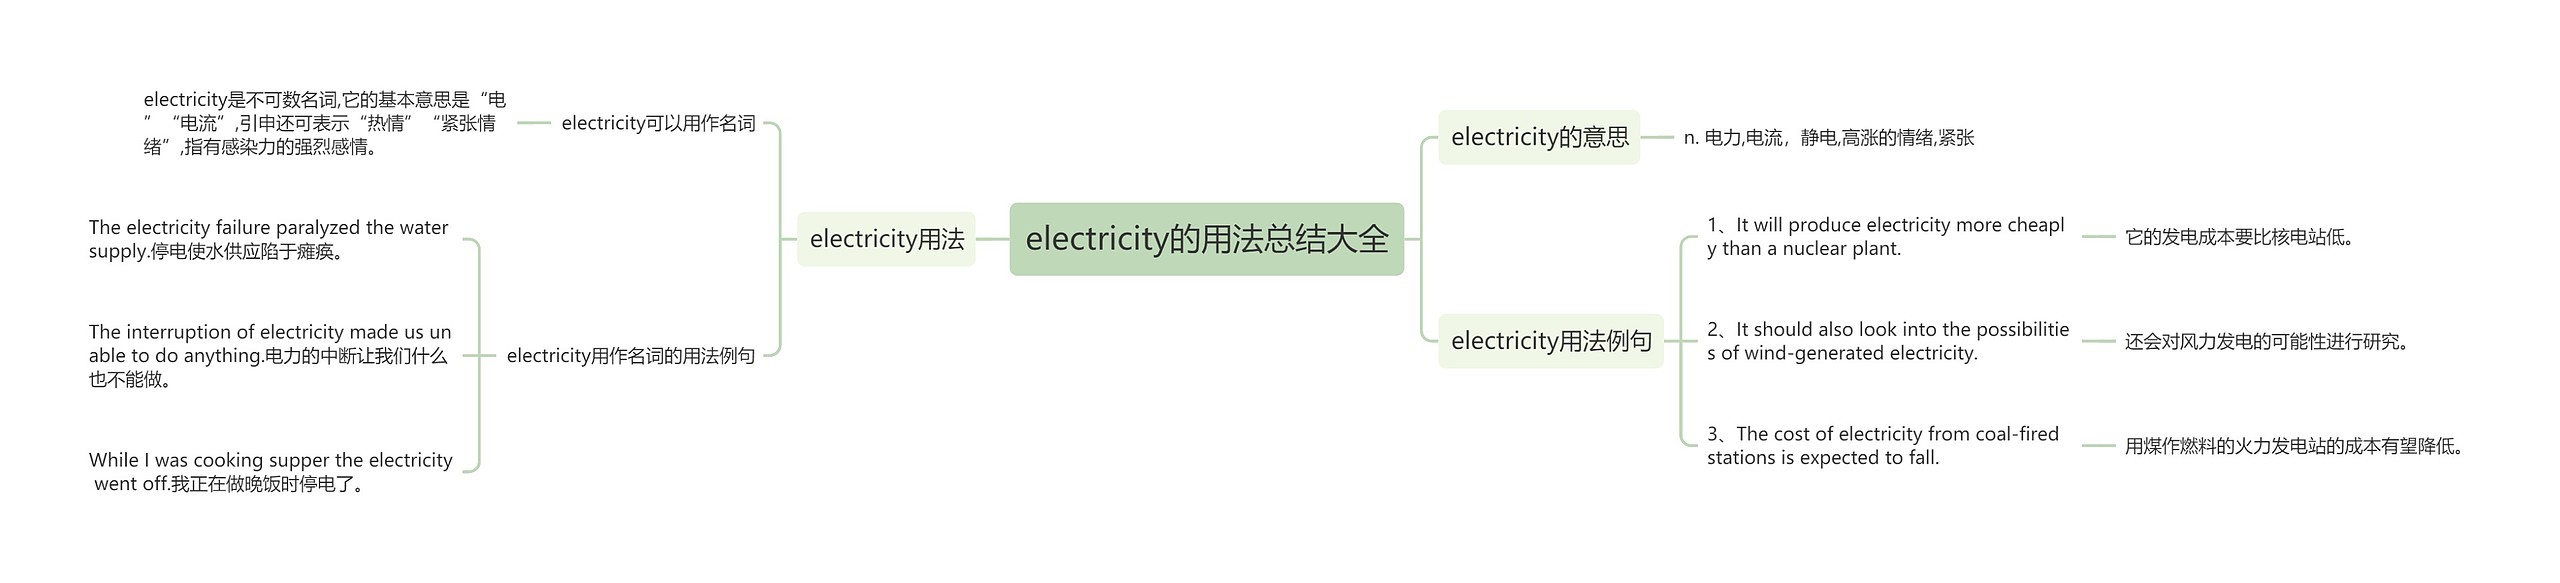 electricity的用法总结大全